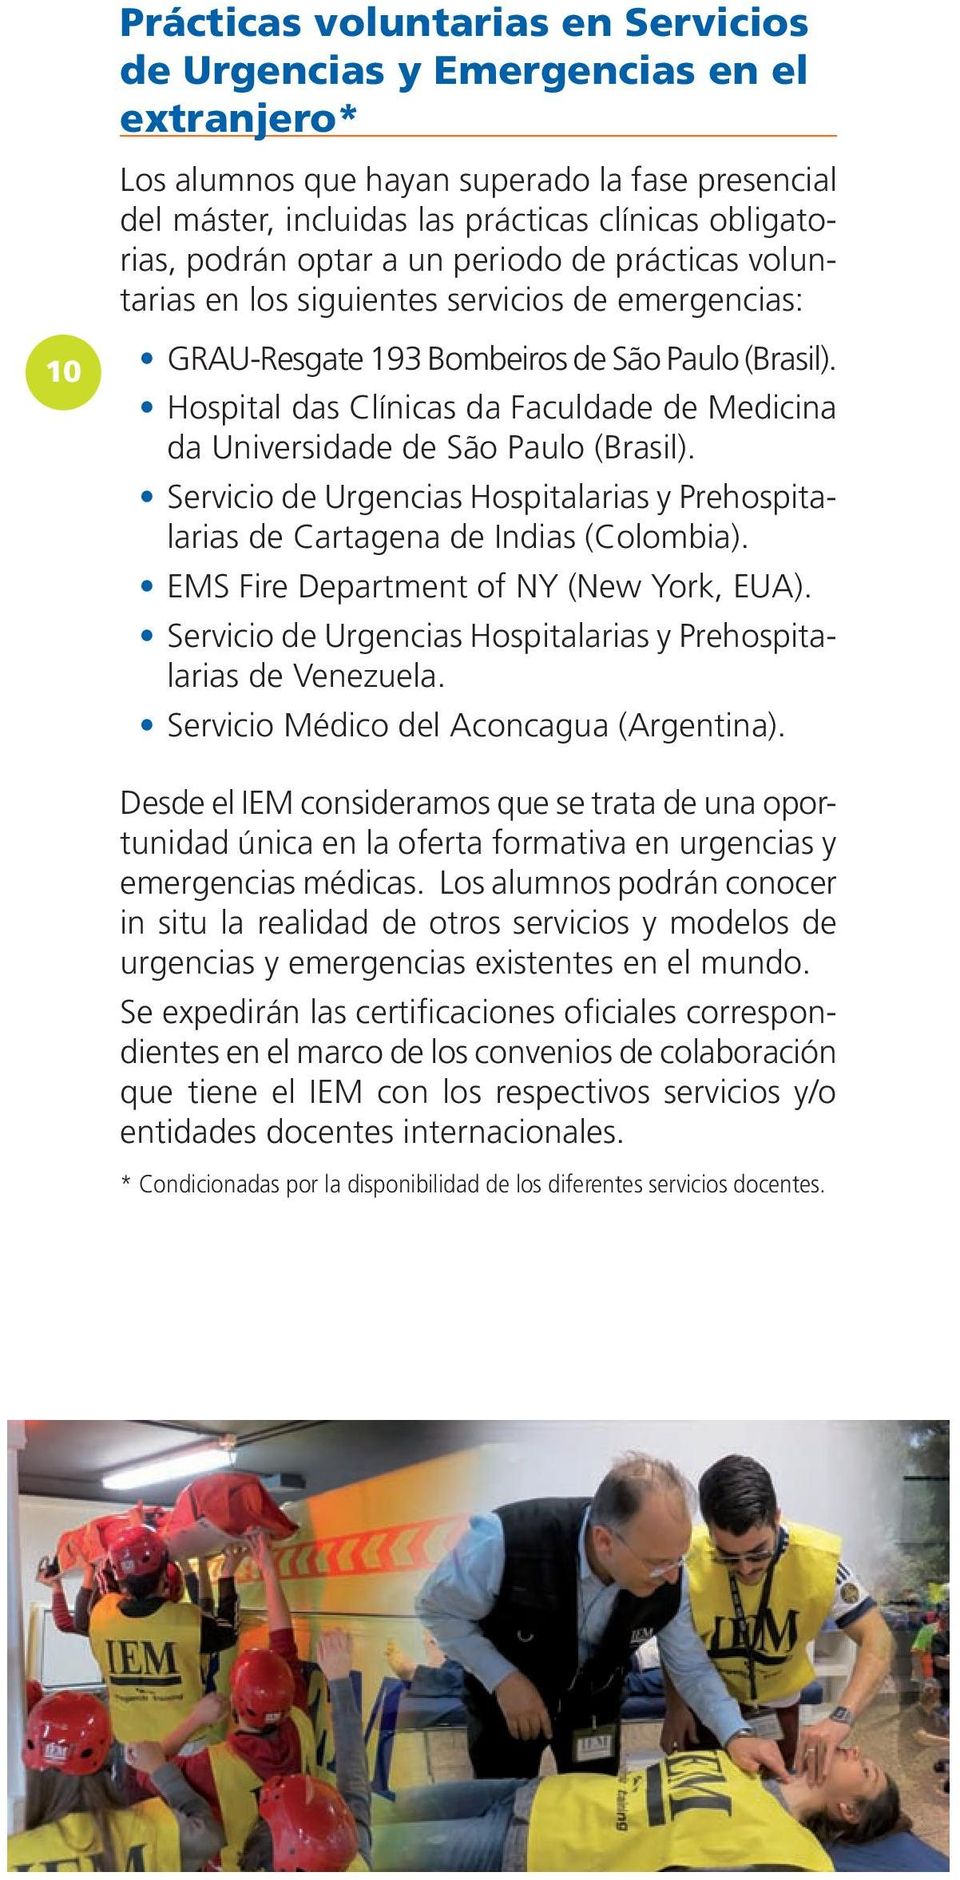 Hospital das Clínicas da Faculdade de Medicina da Universidade de São Paulo (Brasil). Servicio de Urgencias Hospitalarias y Prehospitalarias de Cartagena de Indias (Colombia).